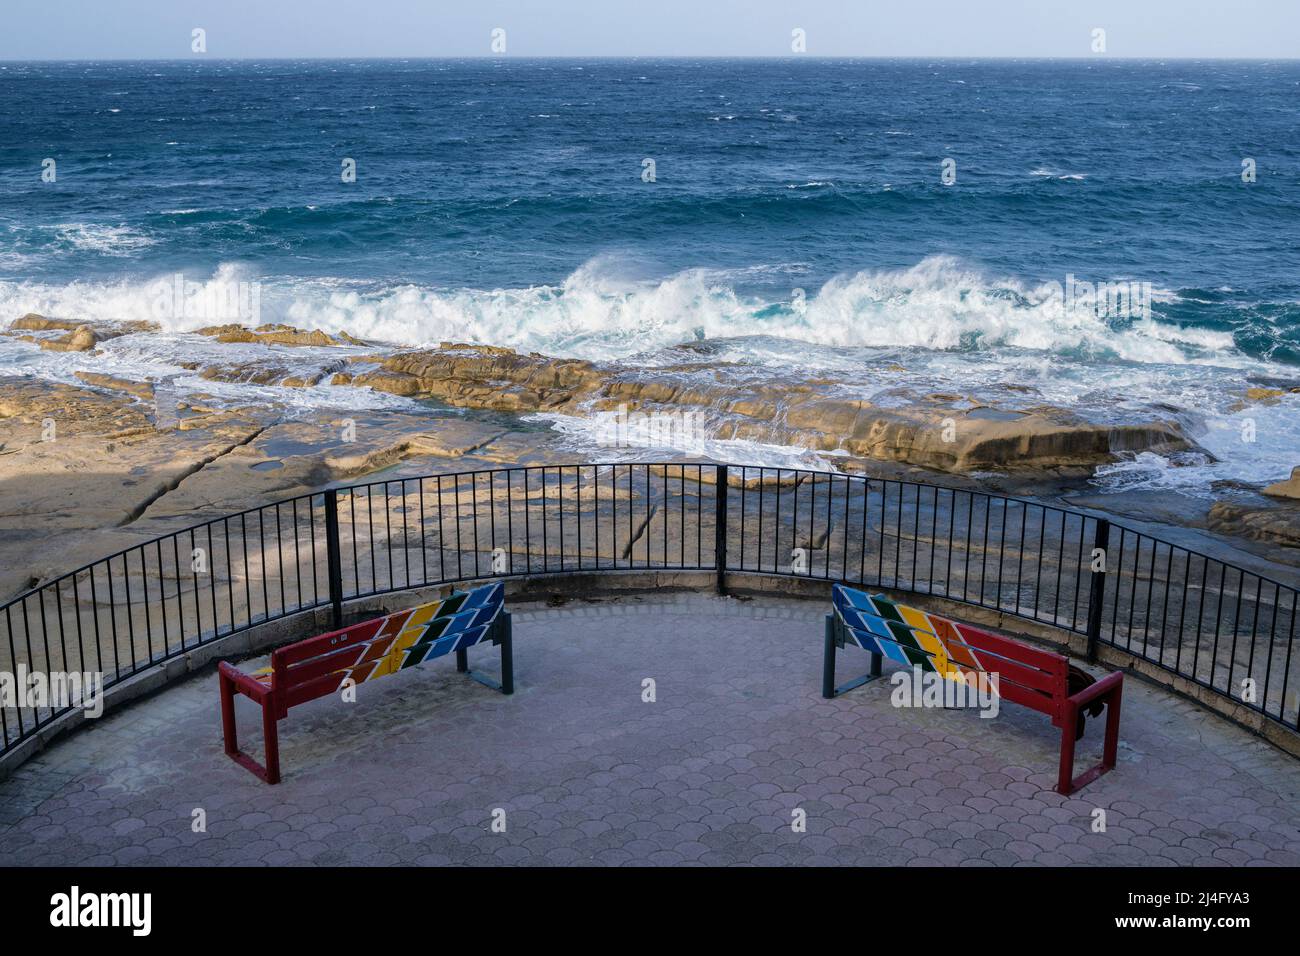 Panchine dipinte in colori maltesi tradizionali e surf breaking in una ventosa giornata invernale a Sliema Malta Foto Stock